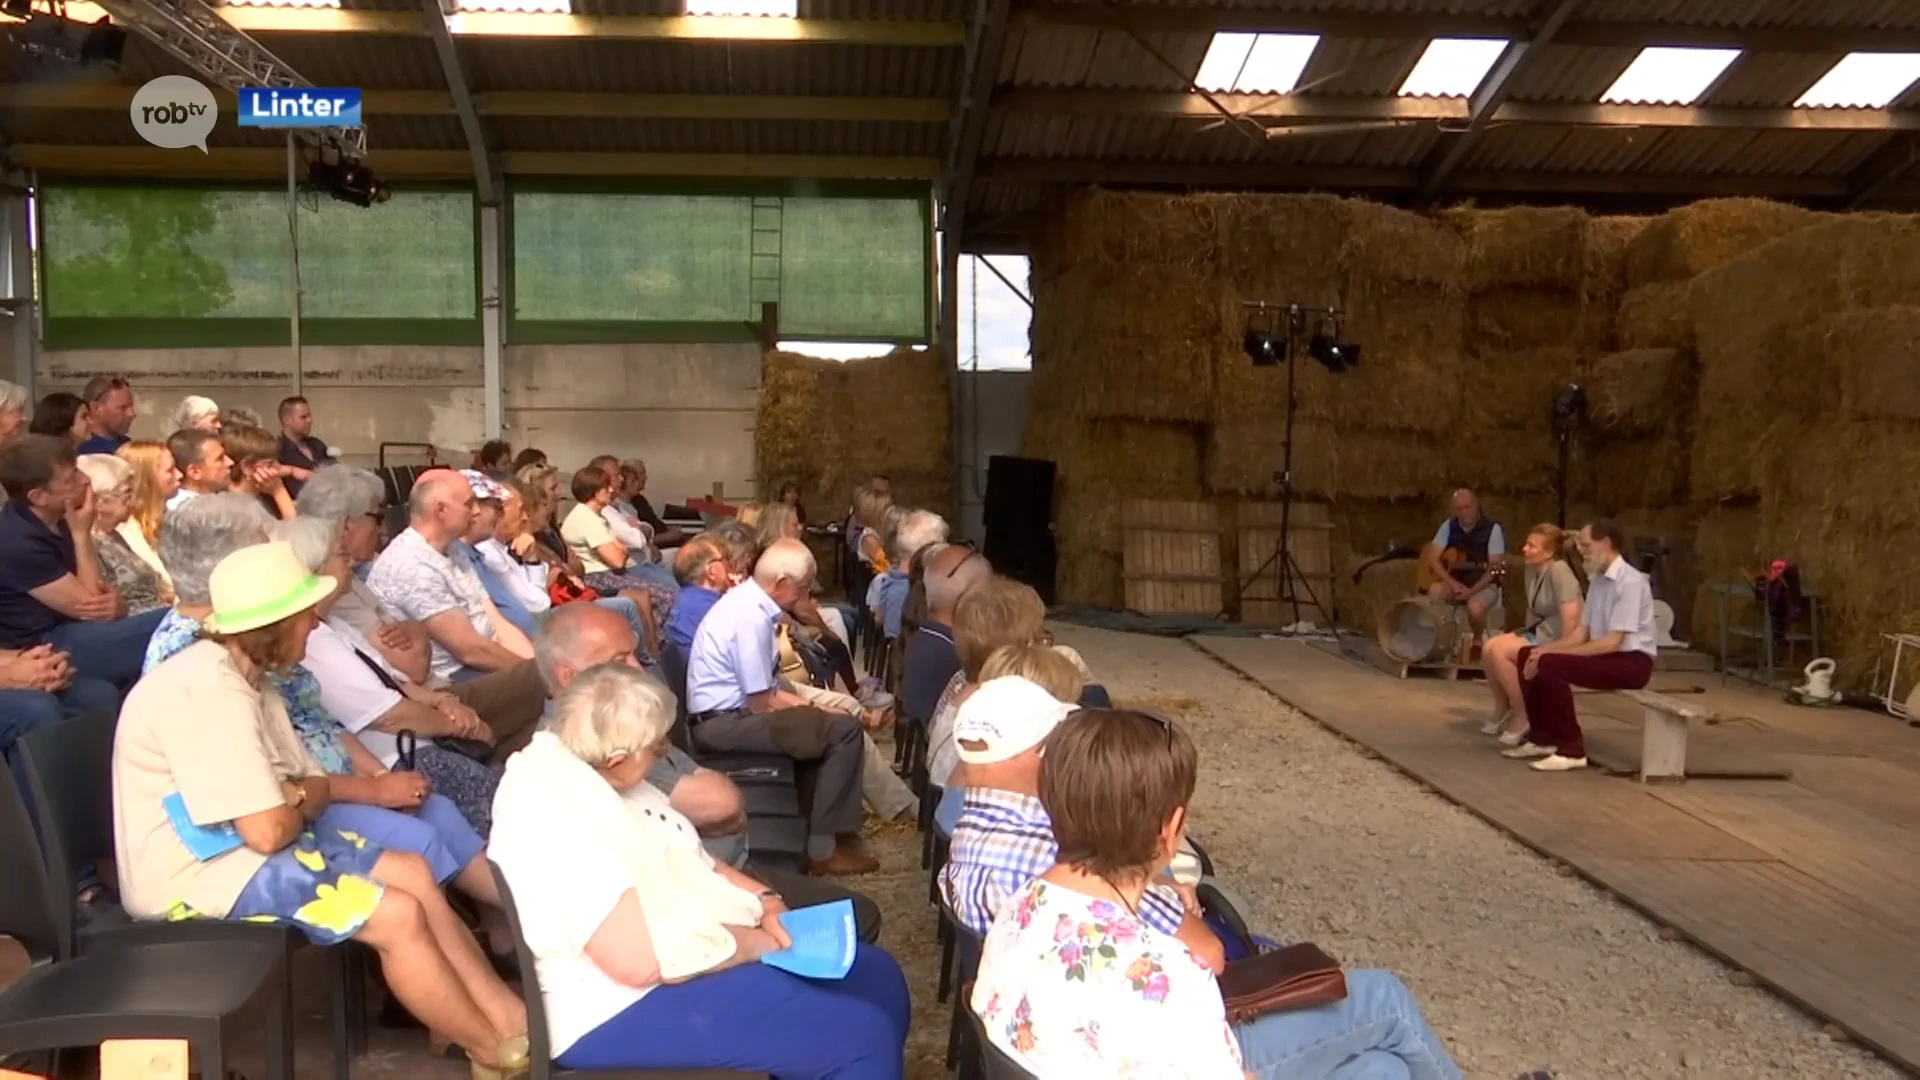 Theaterstuk Boeren op boerderij in Linter: "Het is dezelfde problematiek die we dagelijks ervaren"